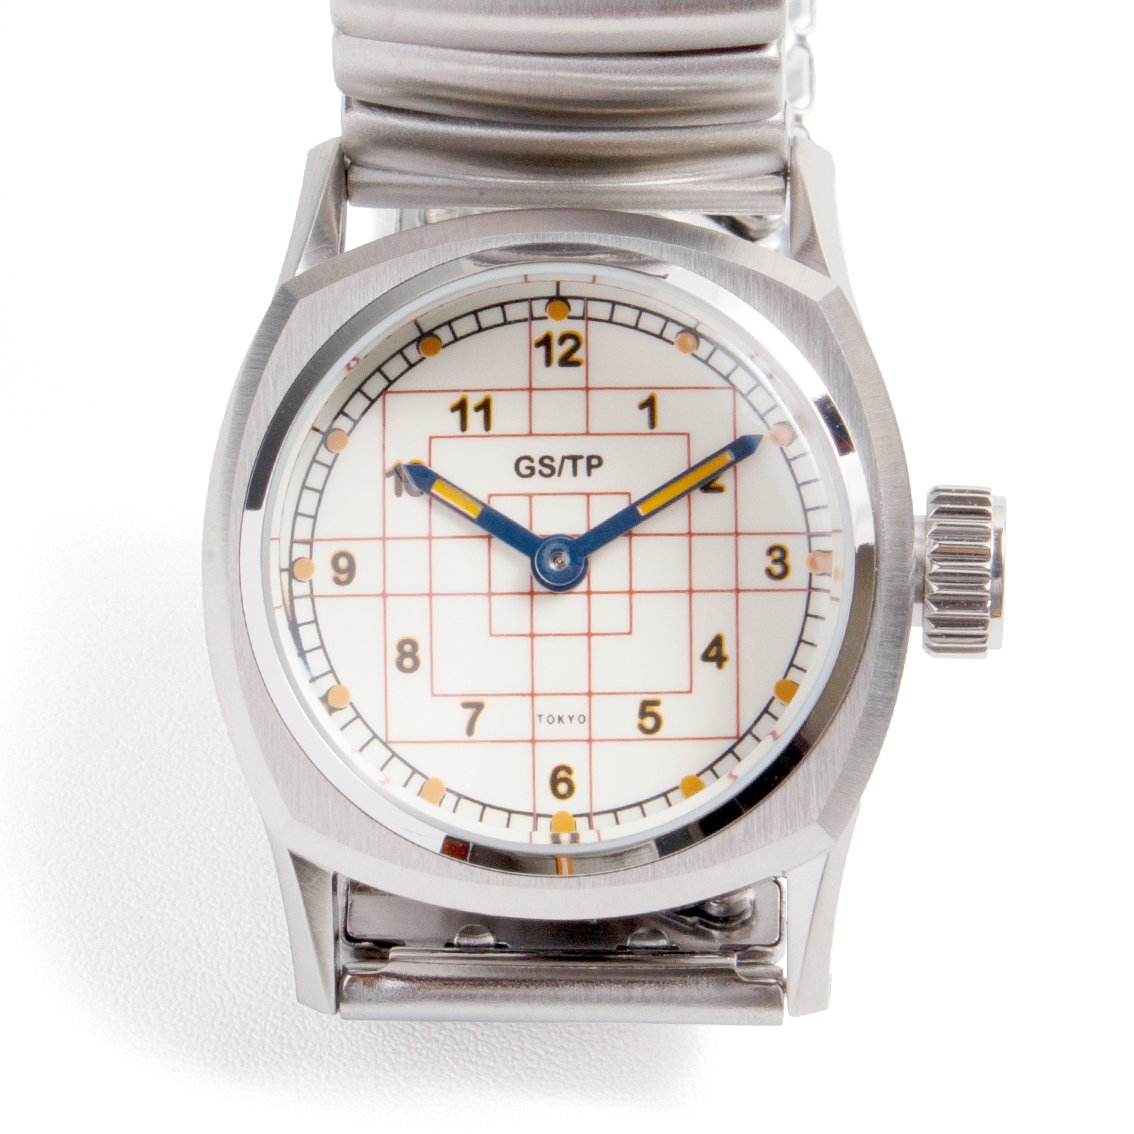 GS/TP / ジーエスティーピー DECO DIAL 腕時計 ミリタリーウォッチ